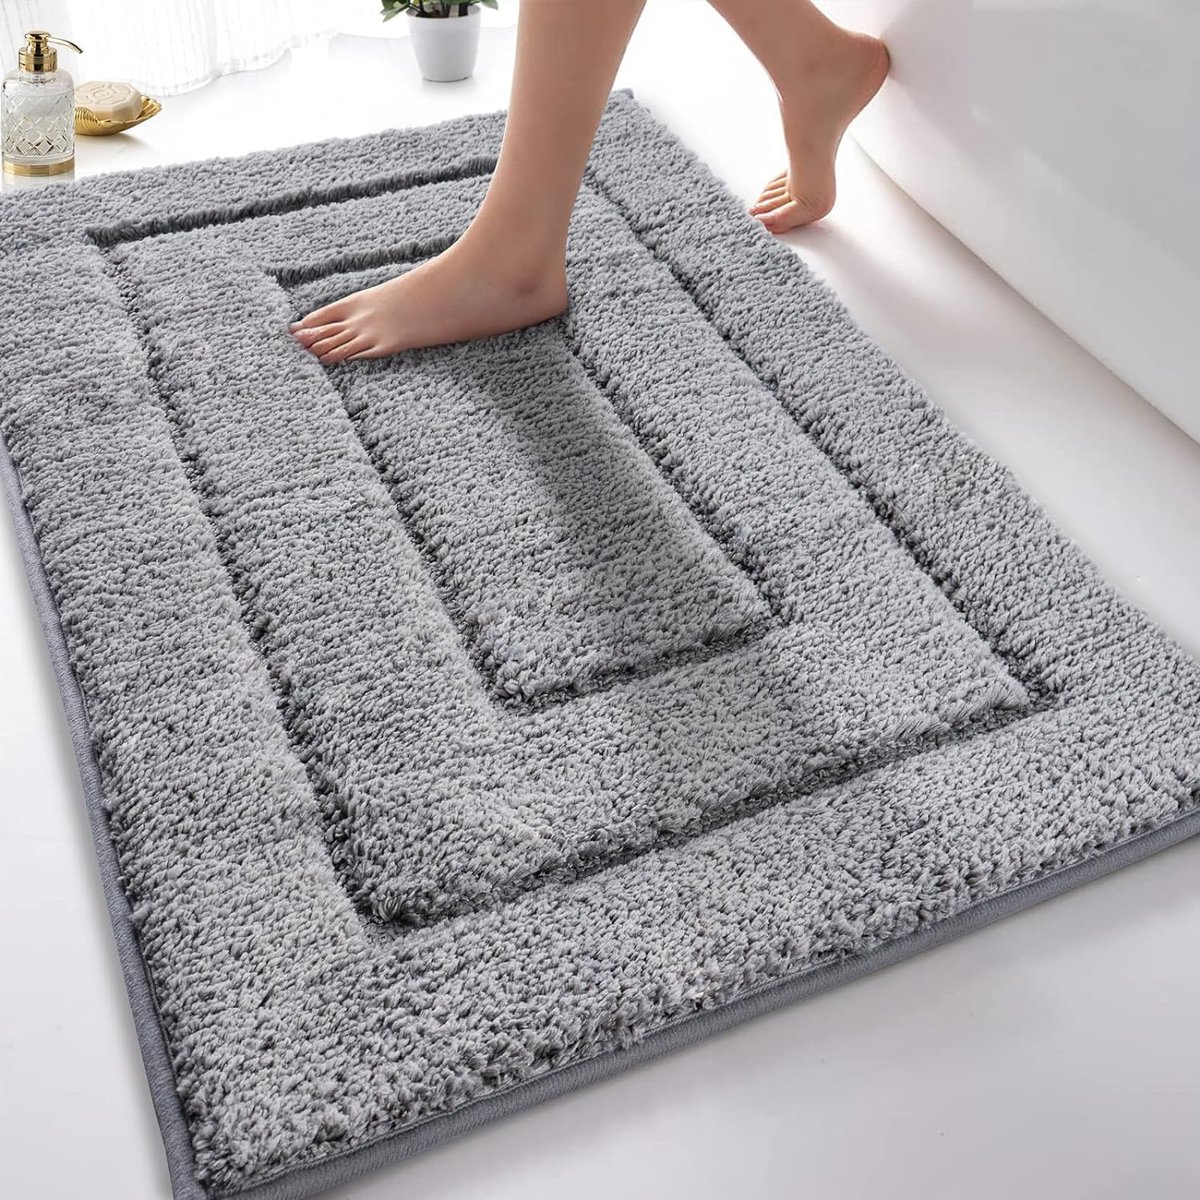 Badkamertapijt badmat antislip wasbaar zacht badtapijt waterabsorberend microvezel badmat voor douche bad en toilet grijs 50 x 80 cm